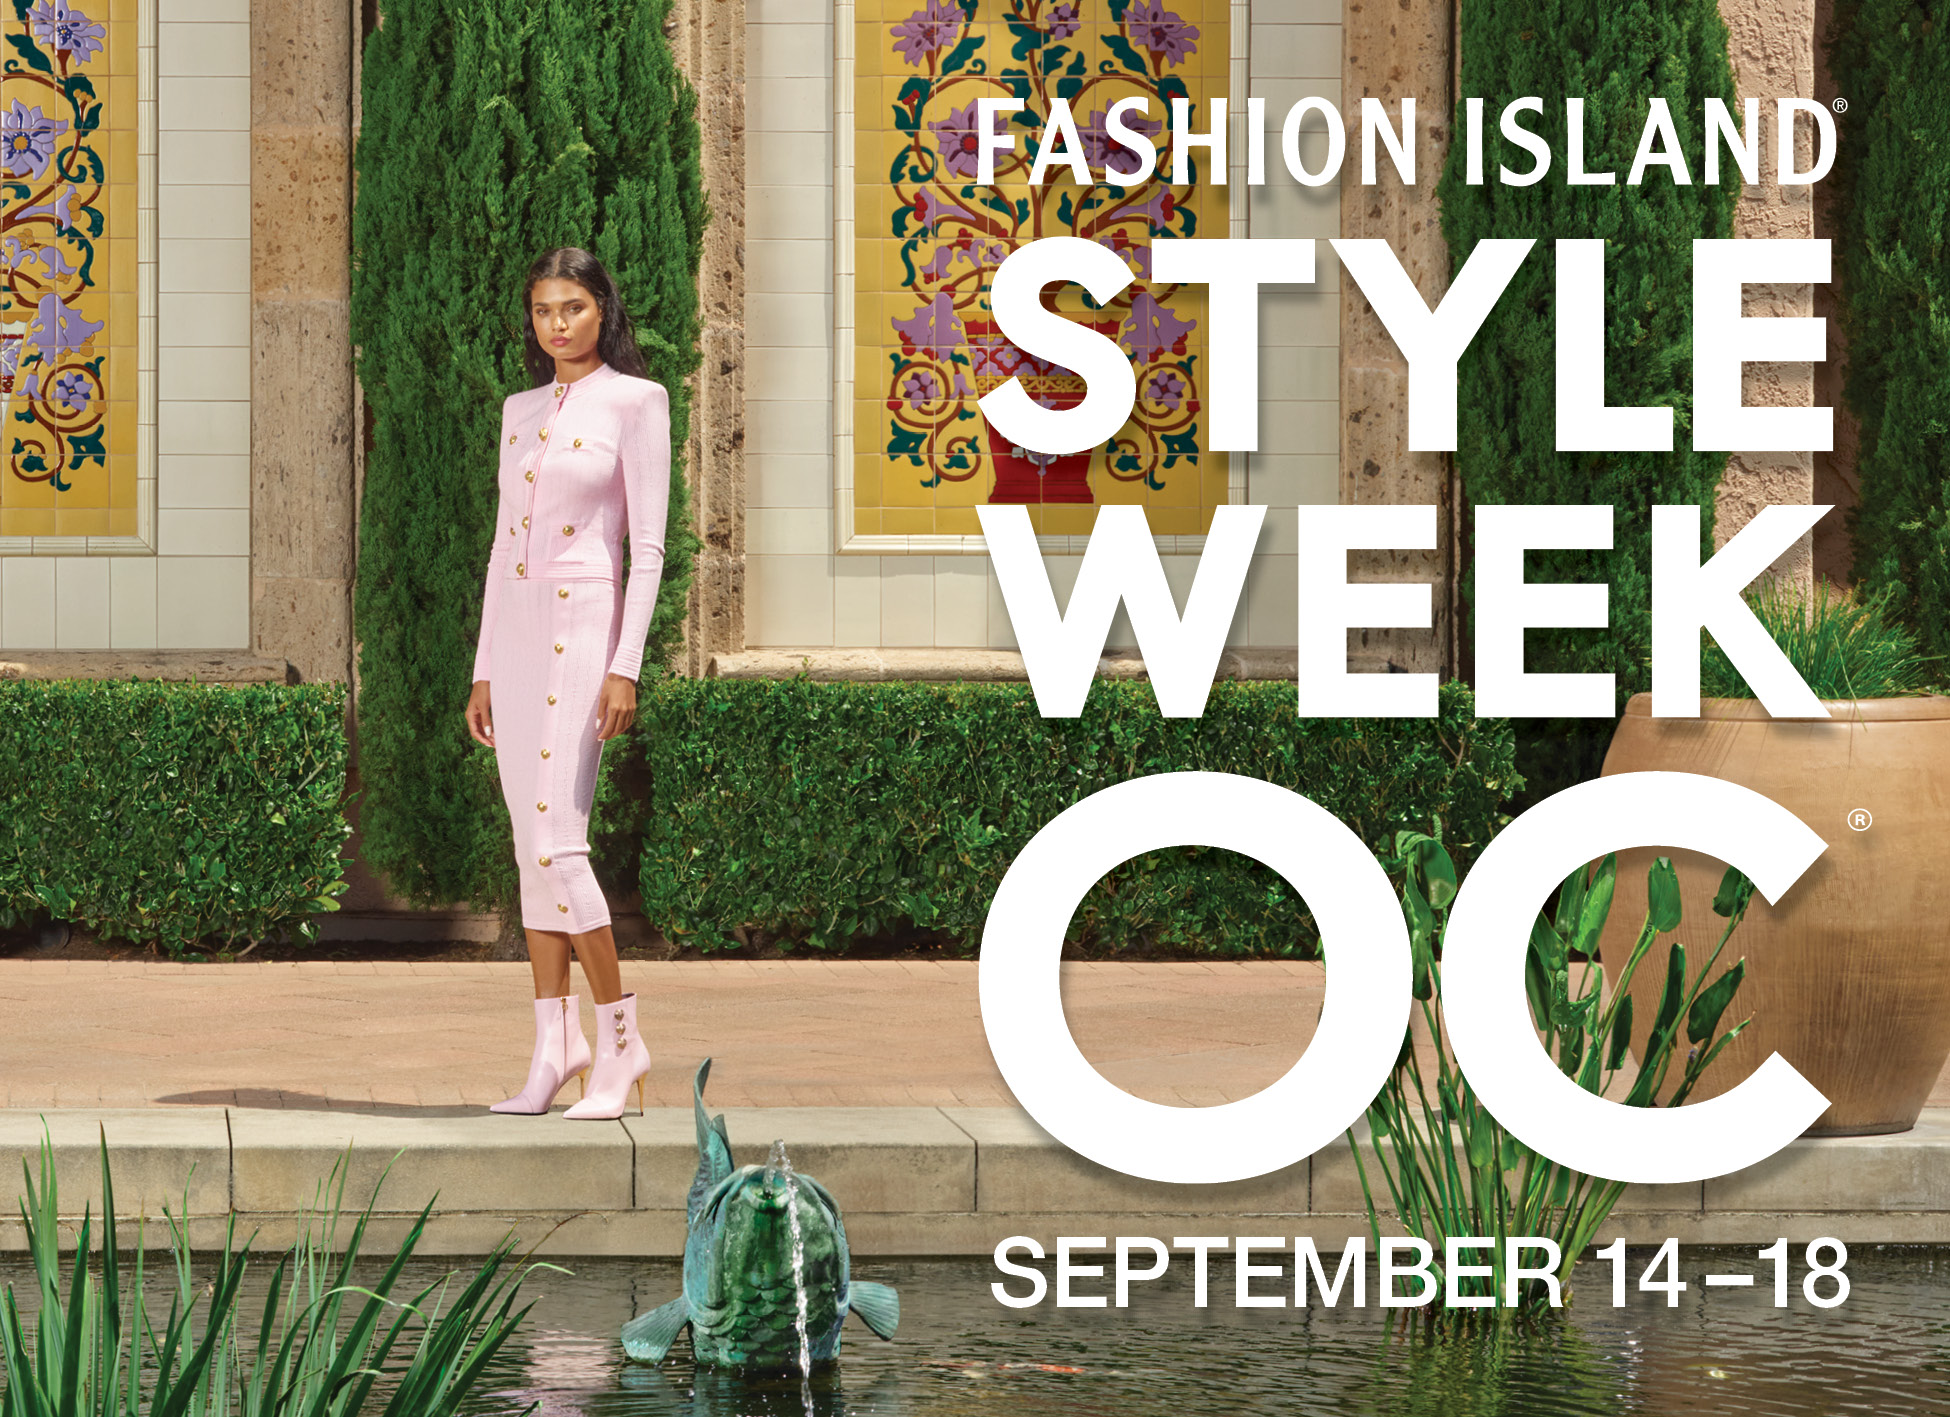 StyleWeekOC Returns September 14 – 18